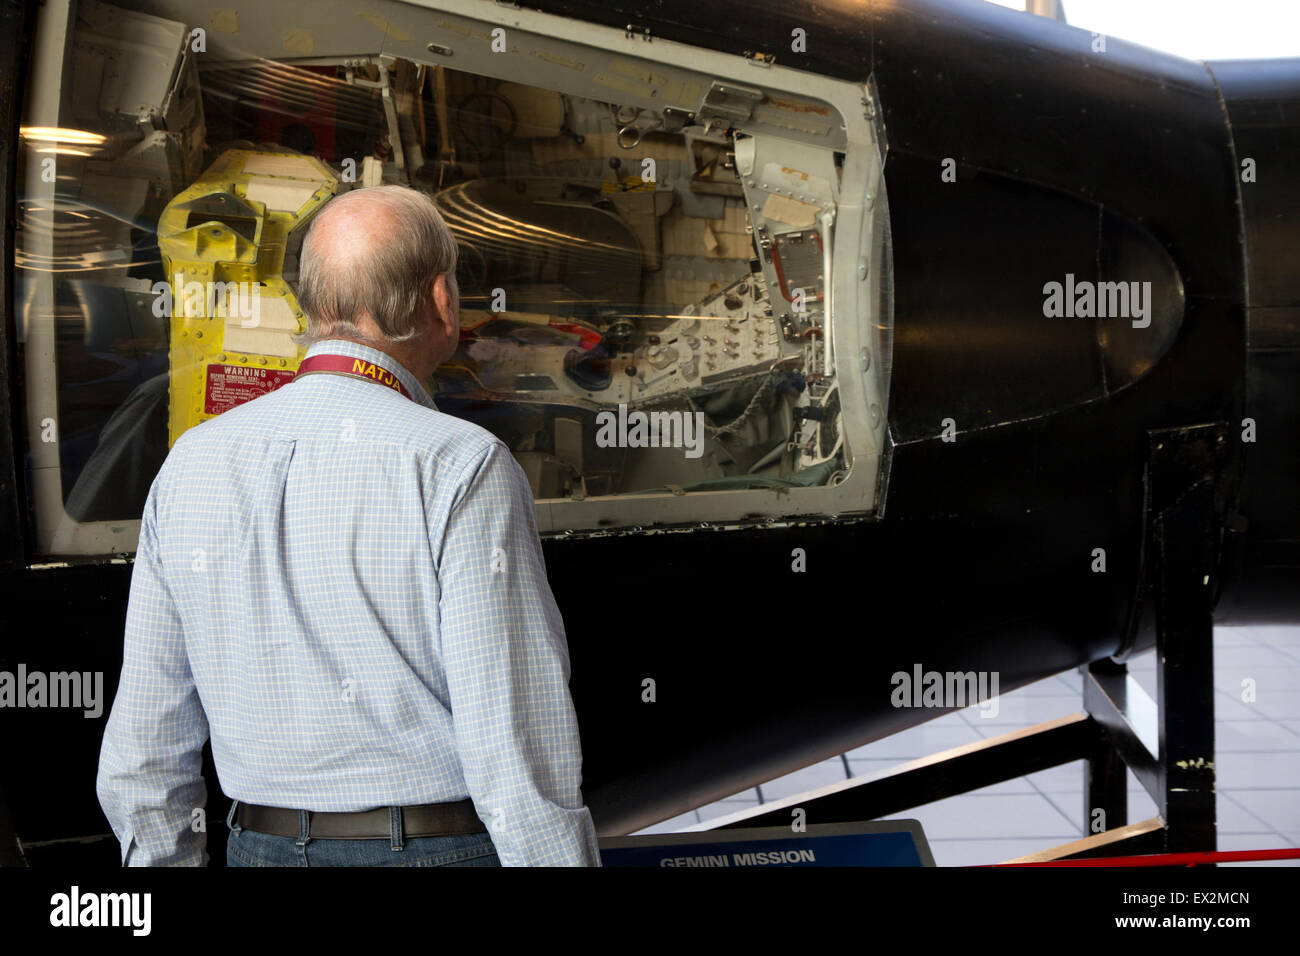 Besucher sieht eine Gemini-Raumkapsel Davidson Center für Weltraumforschung, Huntsville, AL Stockfoto